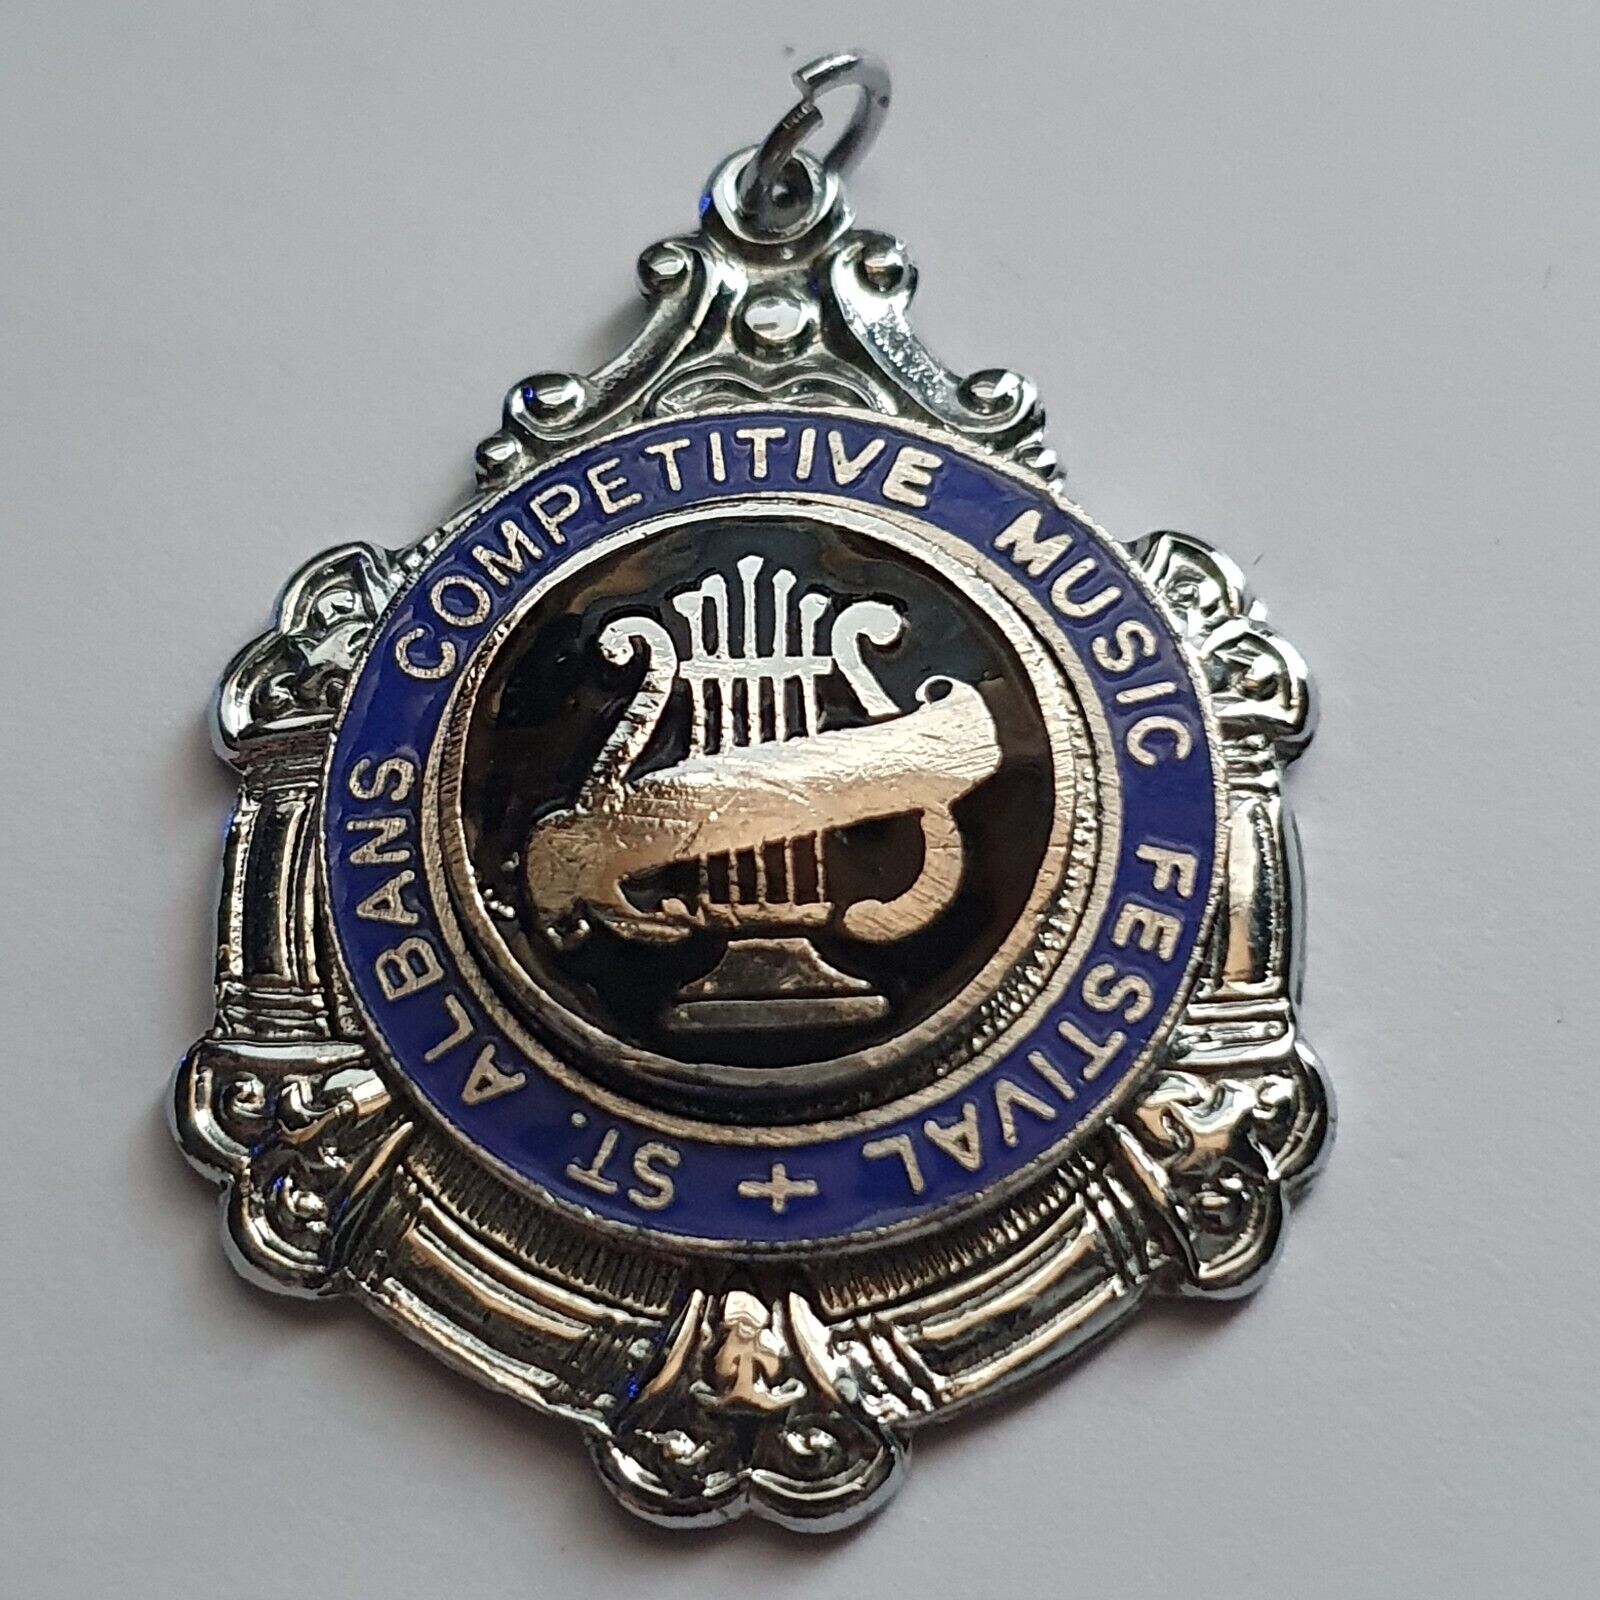 Vintage St Albans Competitive Music Festival Metal & Enamel Medal Medallion